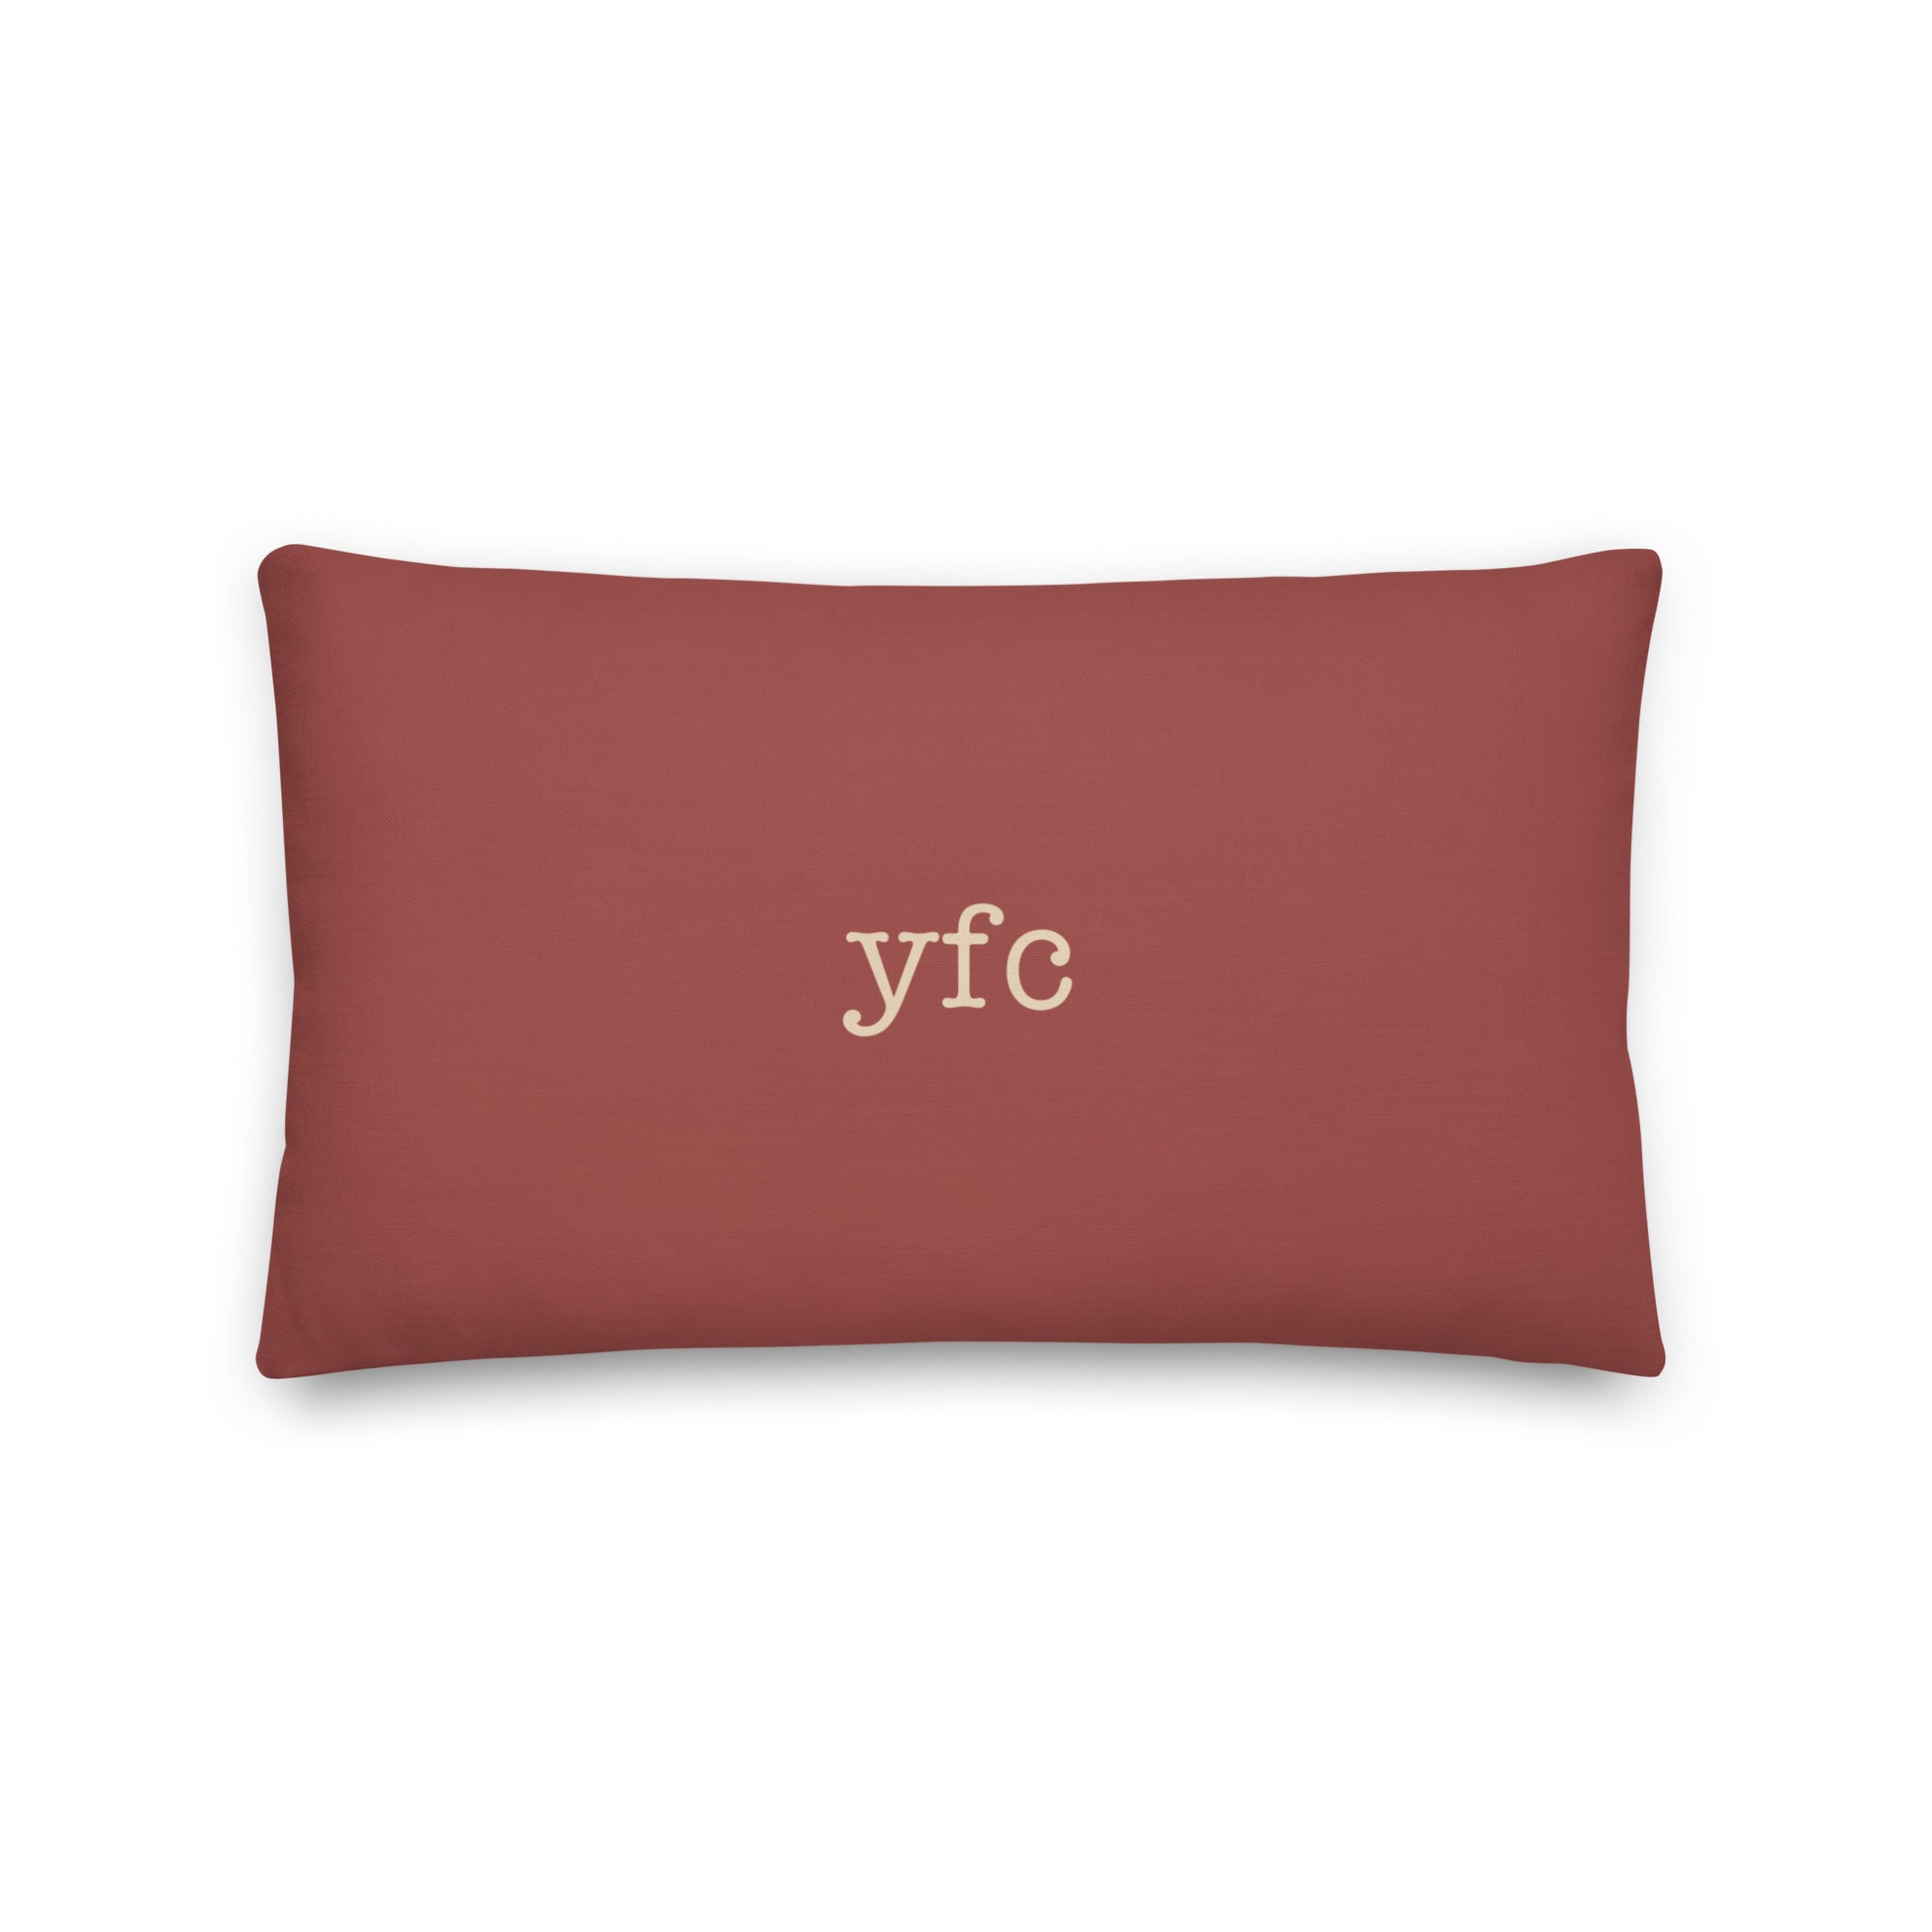 Typewriter Pillow - Terra Cotta • YFB Iqaluit • YHM Designs - Image 02